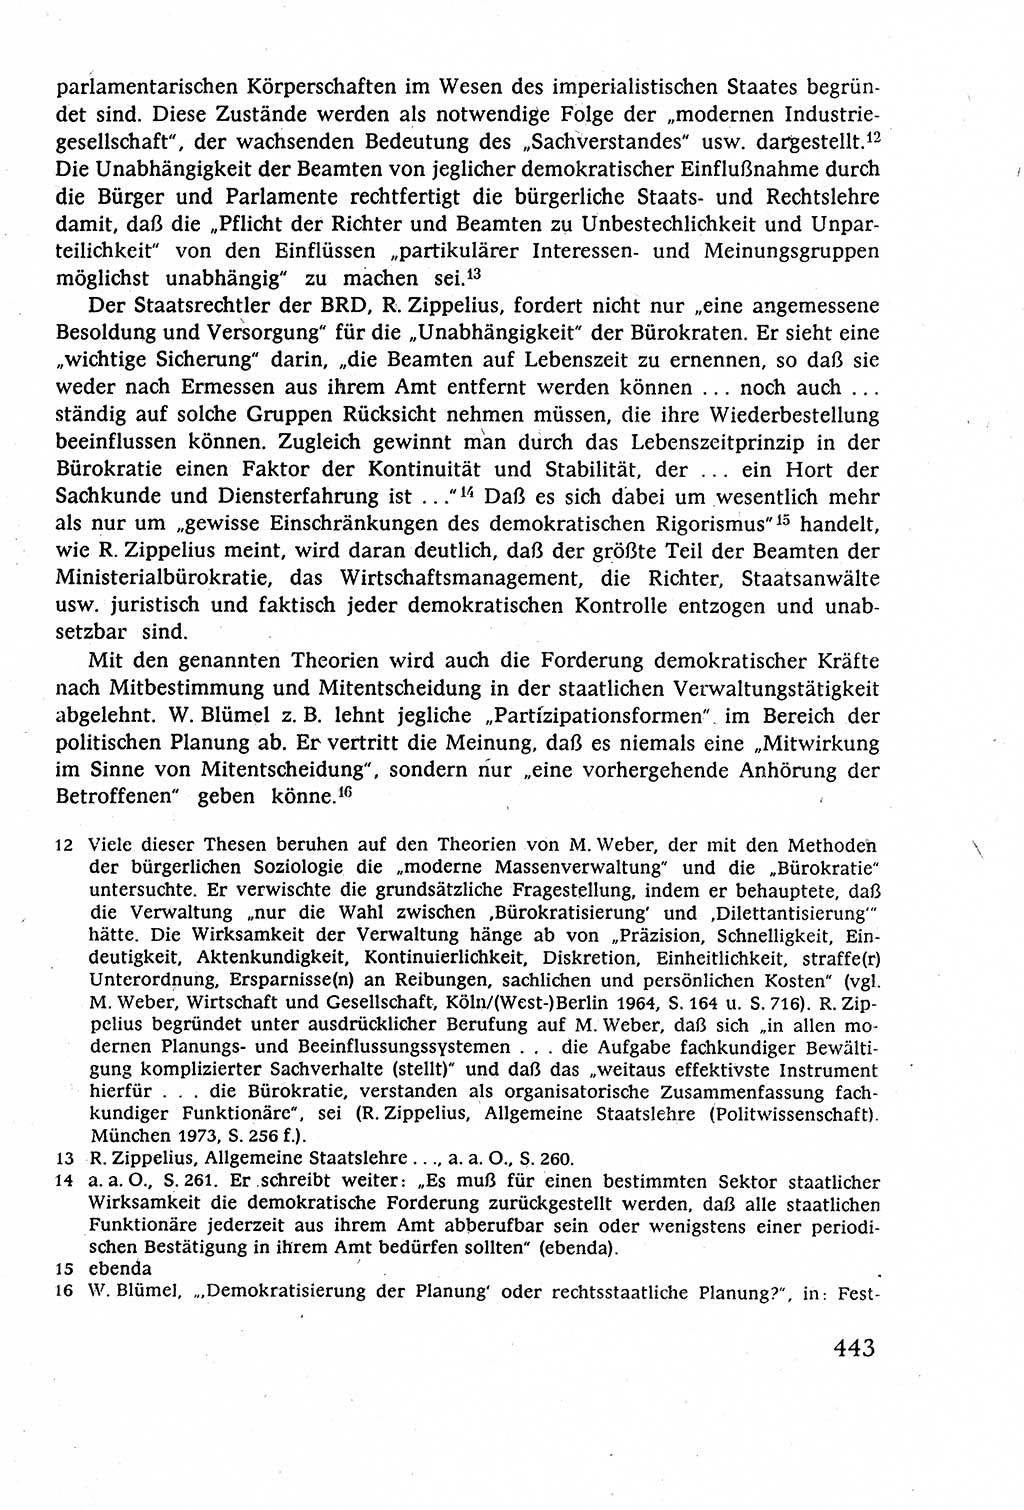 Staatsrecht der DDR (Deutsche Demokratische Republik), Lehrbuch 1977, Seite 443 (St.-R. DDR Lb. 1977, S. 443)